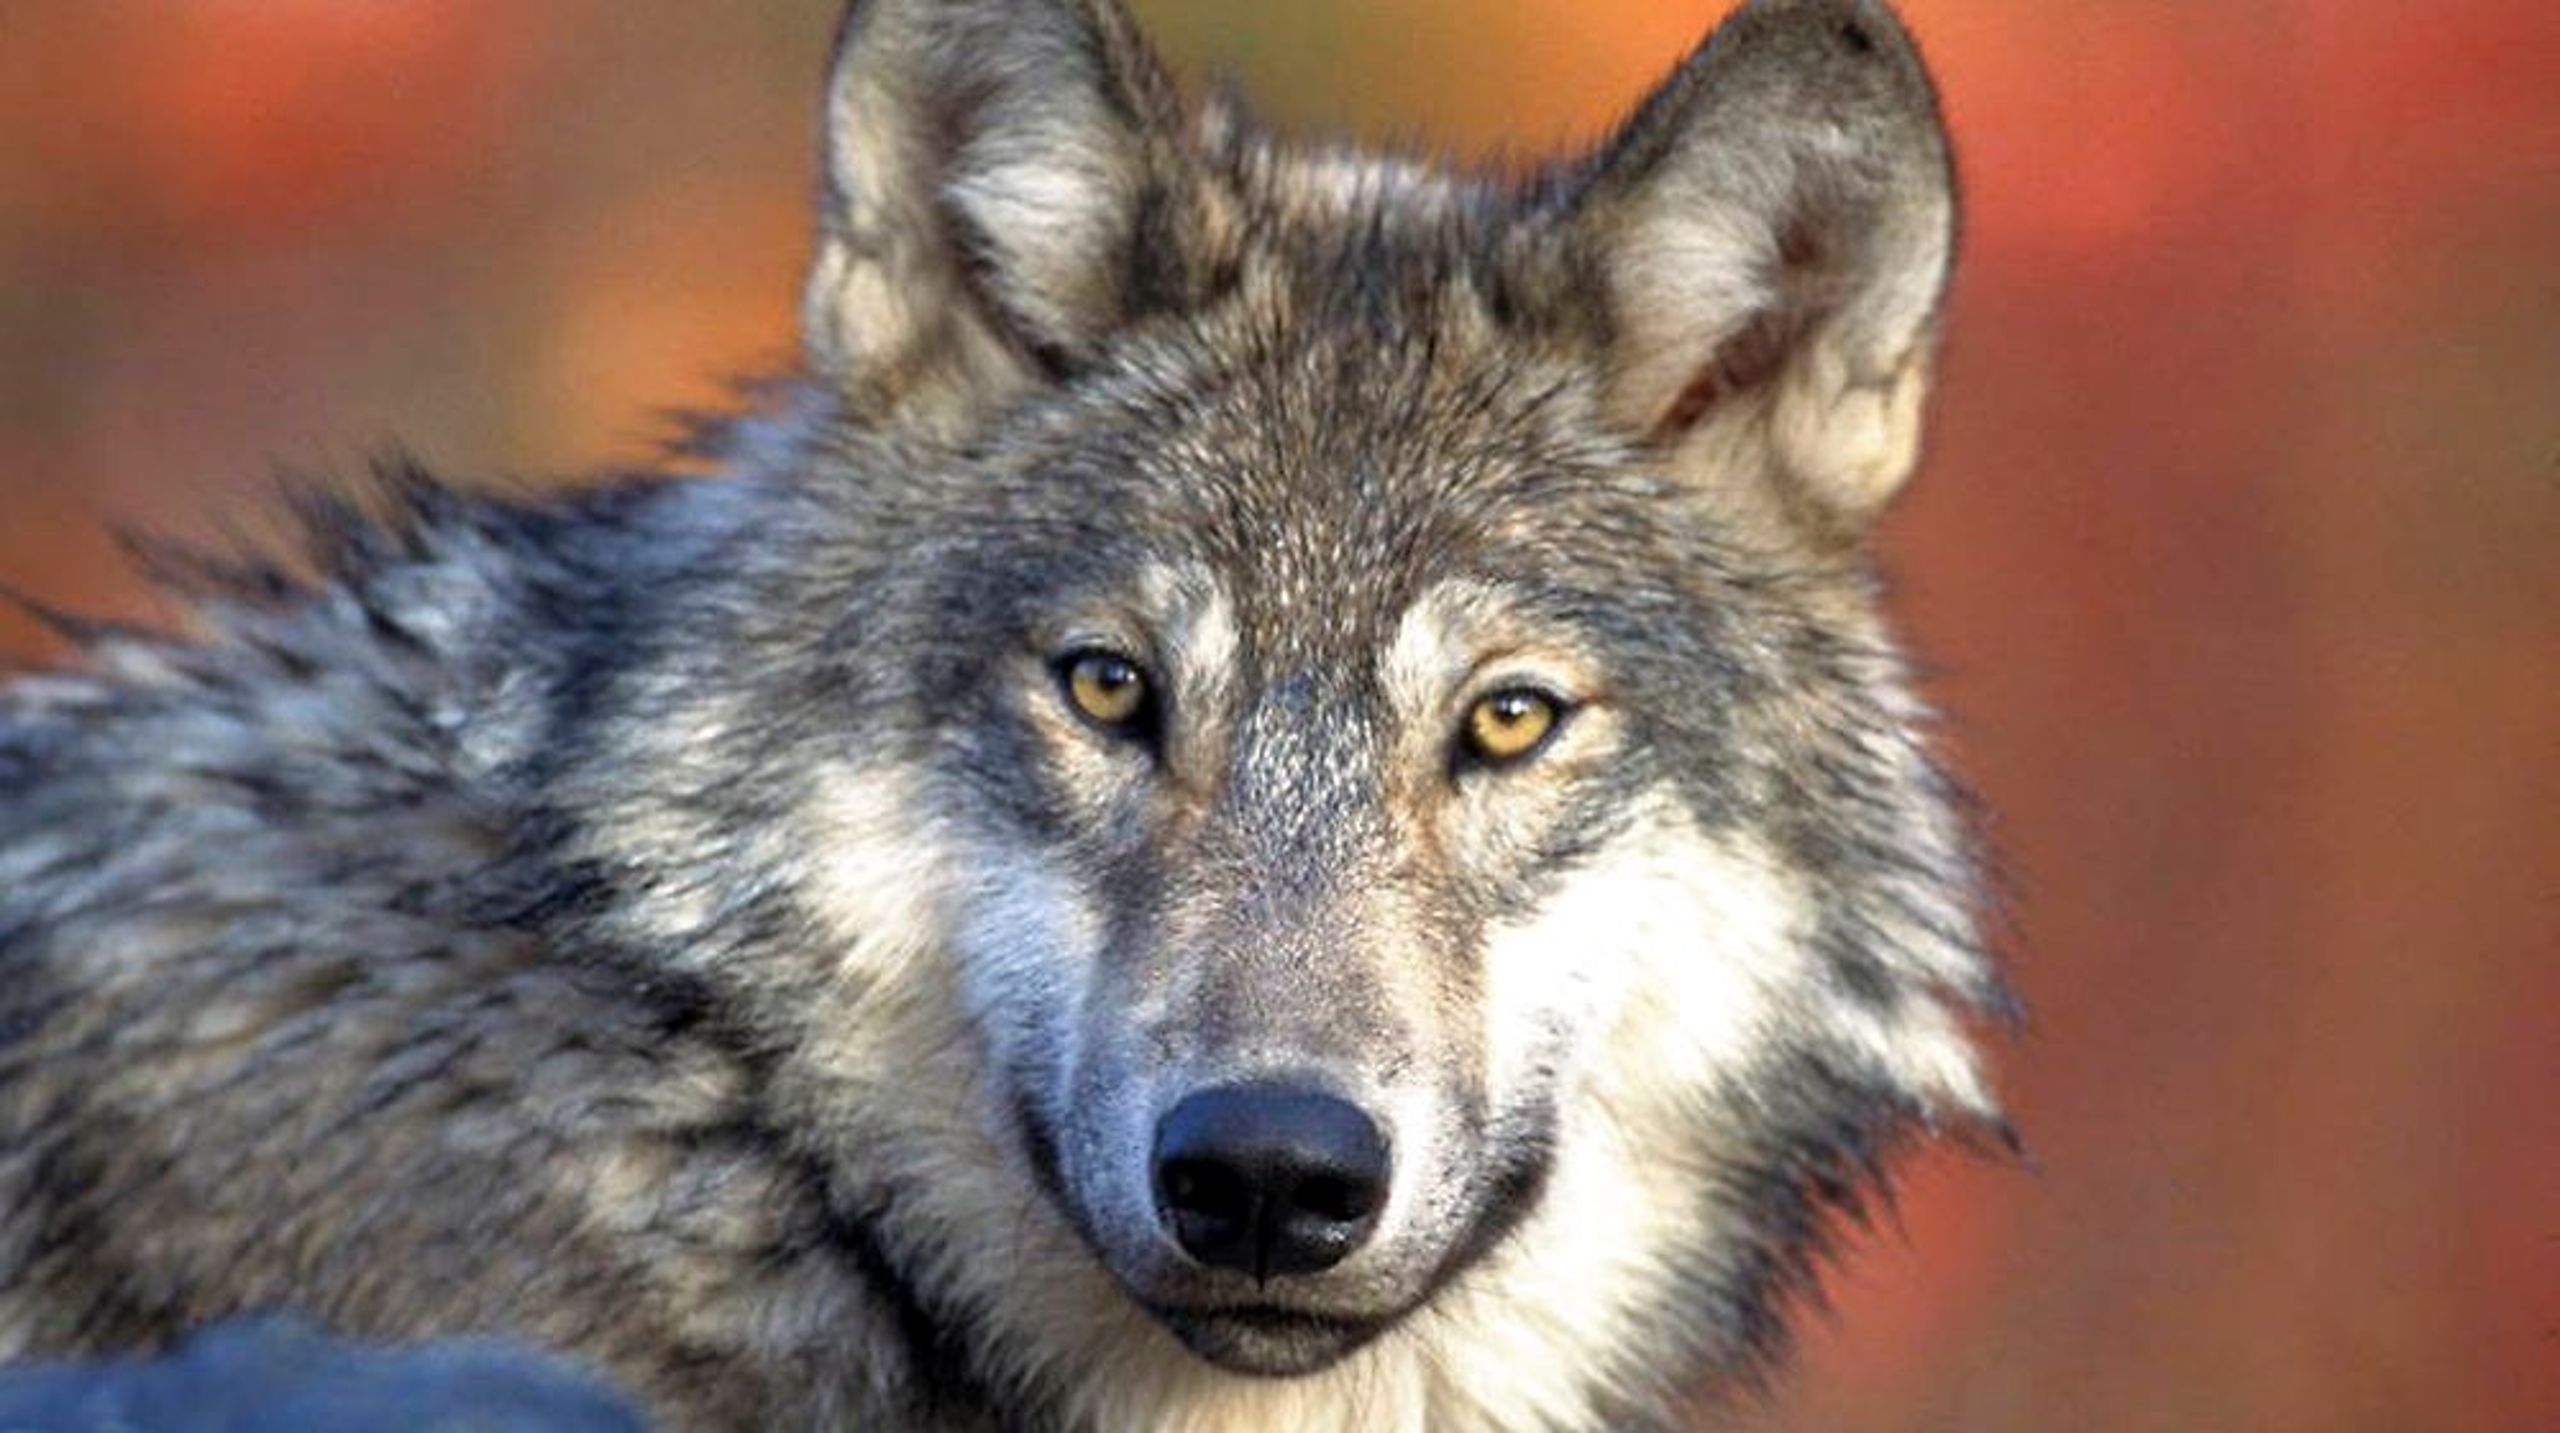 "Der er ulve i mosen", plejede talemåden at være, indtil ulven blev udryddet i Danmark, og uglen tog dens plads. I dag er ulven tilbage, og både Venstre og Europa-Kommissionen mener, at jagt bør være tilladt.&nbsp;<br><br>